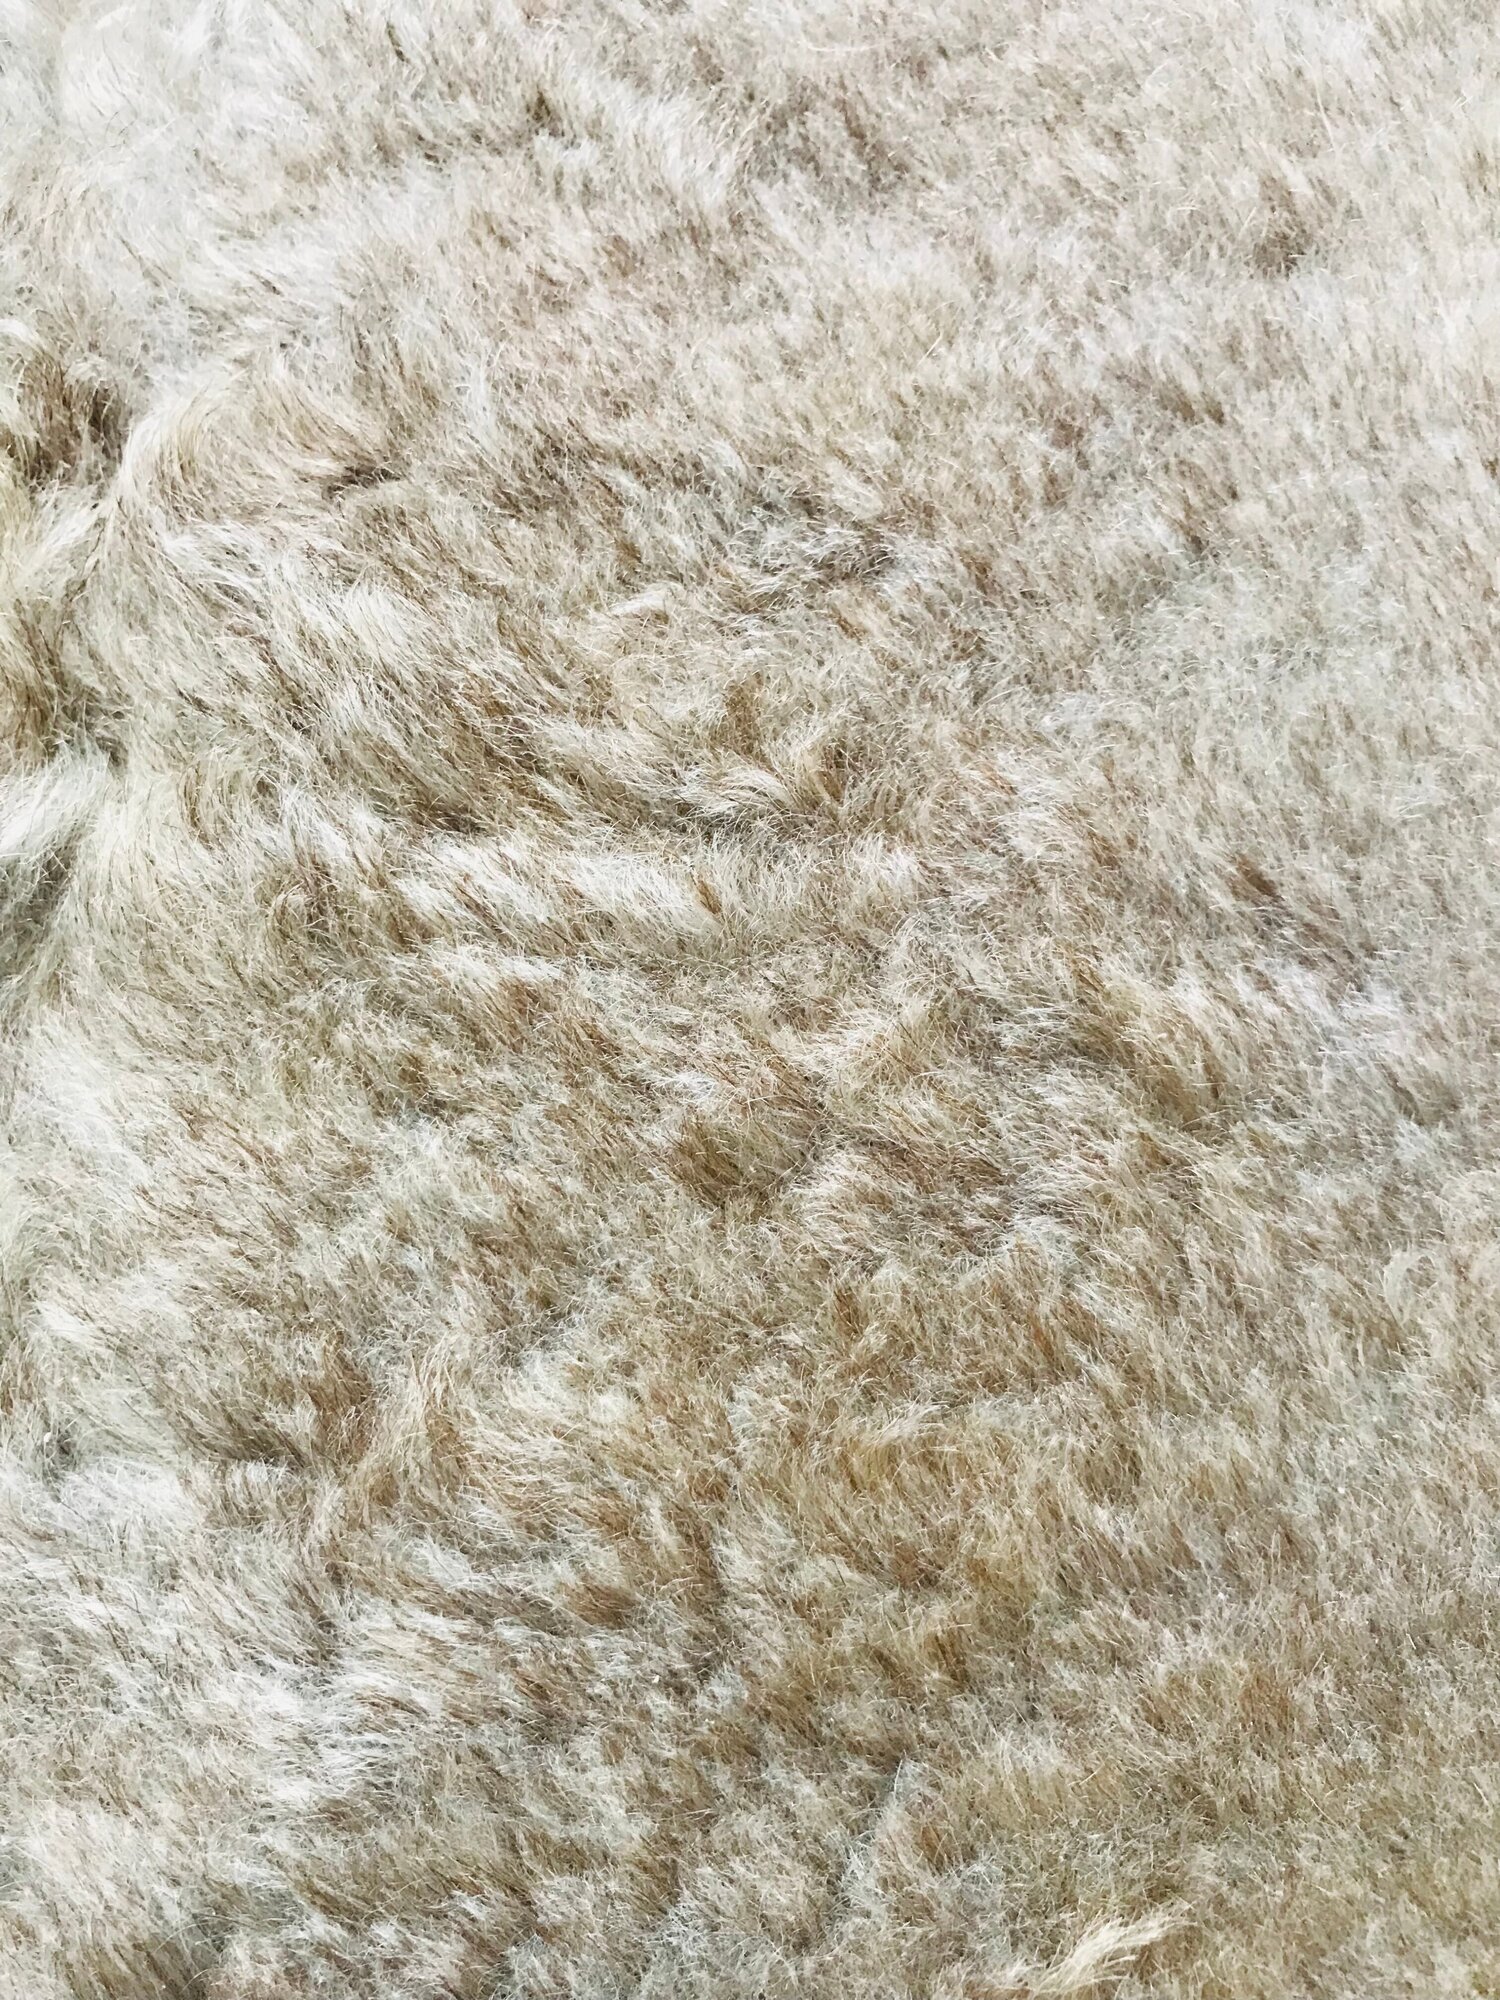 ковер-накидка из стриженной натуральной овечьей шкуры (мех, овчина) для дома и авто/. - фотография № 5